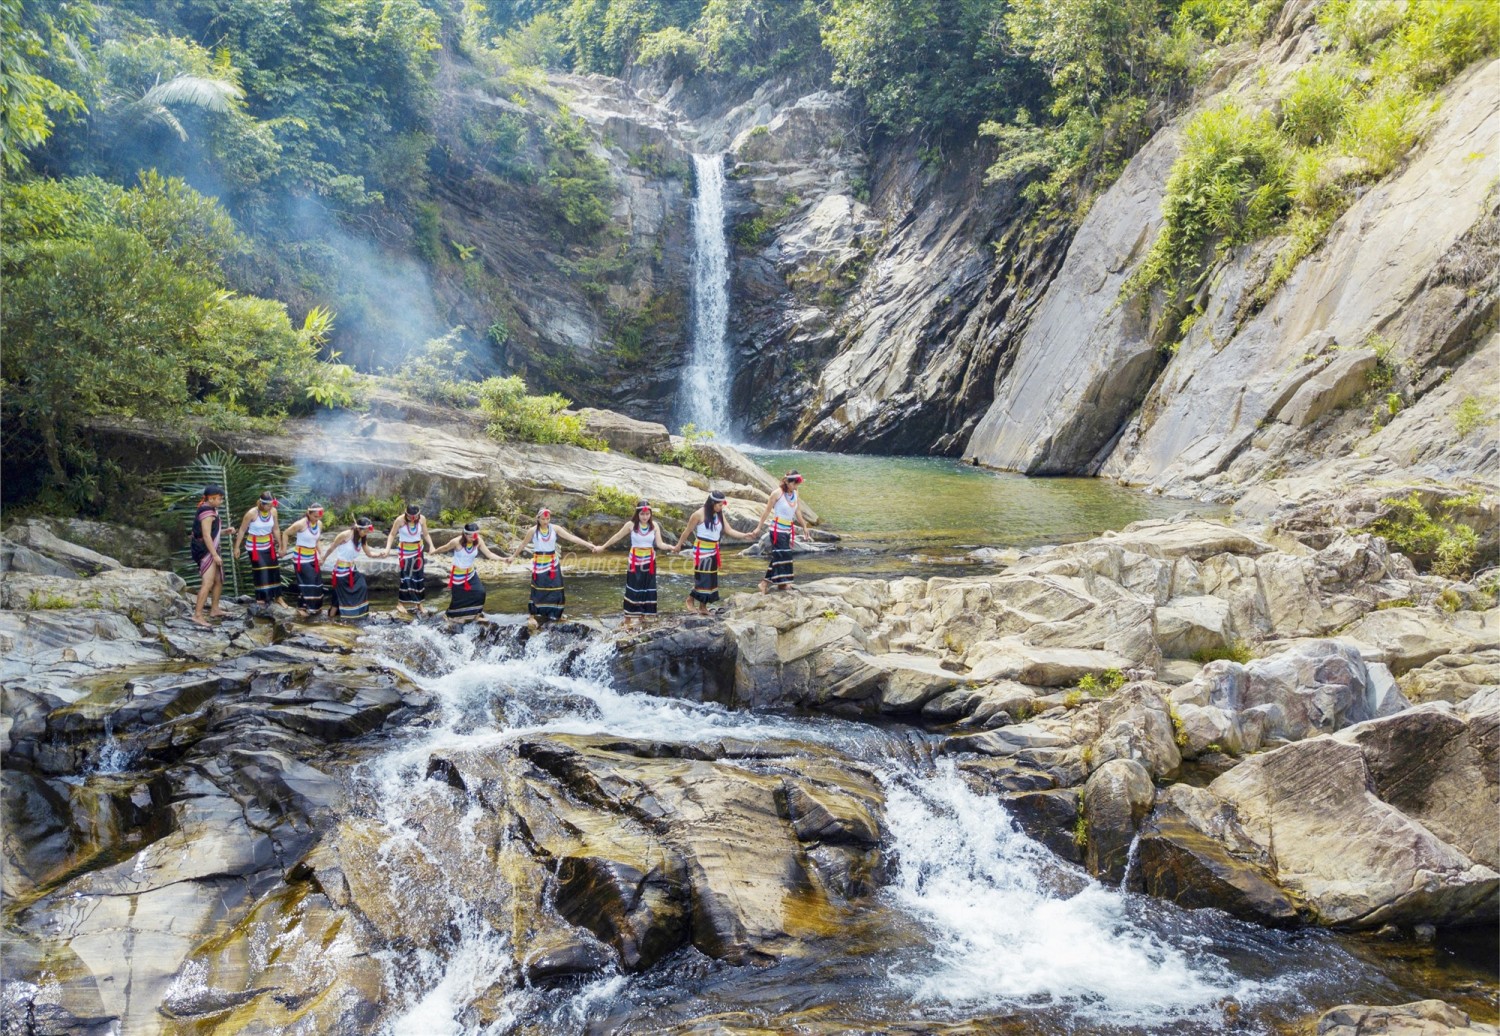 Hố Nước Ví tại núi Răng cưa xã Trà Kót (Bắc Trà My) giàu tiềm năng phát triển du lịch sinh thái. Ảnh: HỮU KHIÊM